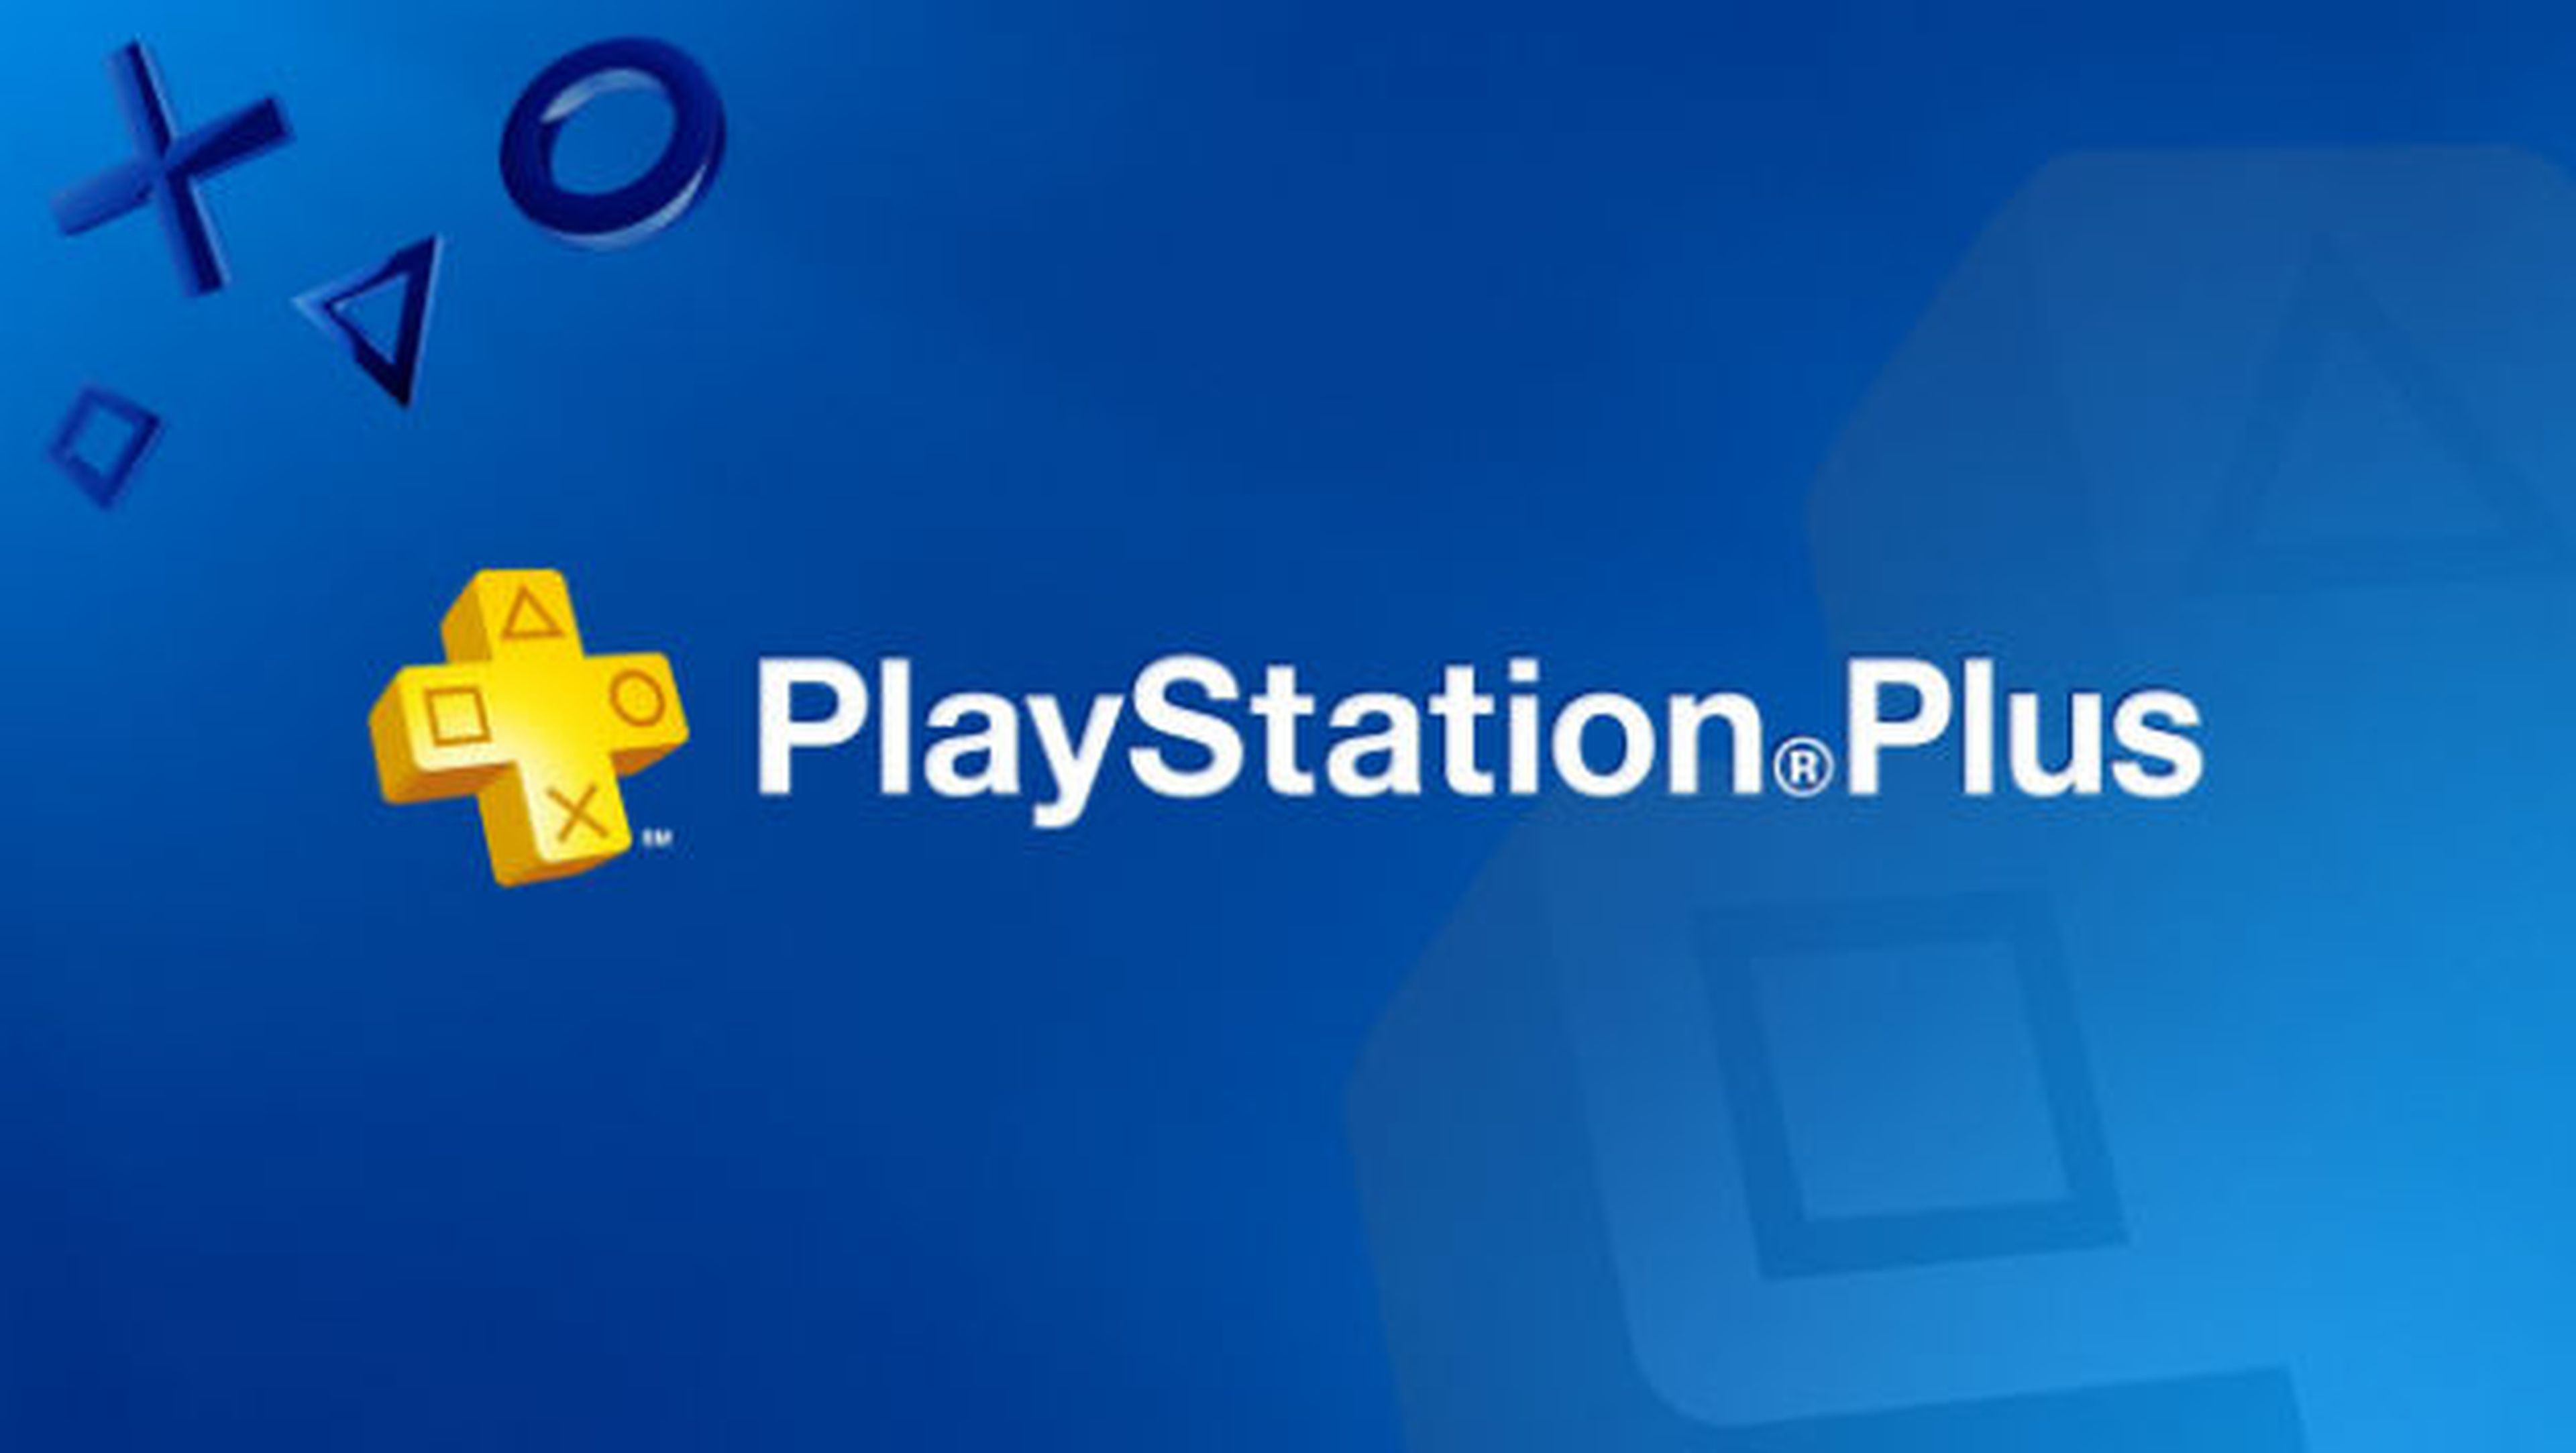 Ya puedes jugar gratis en Internet con tu PS4 a través de PS Plus.